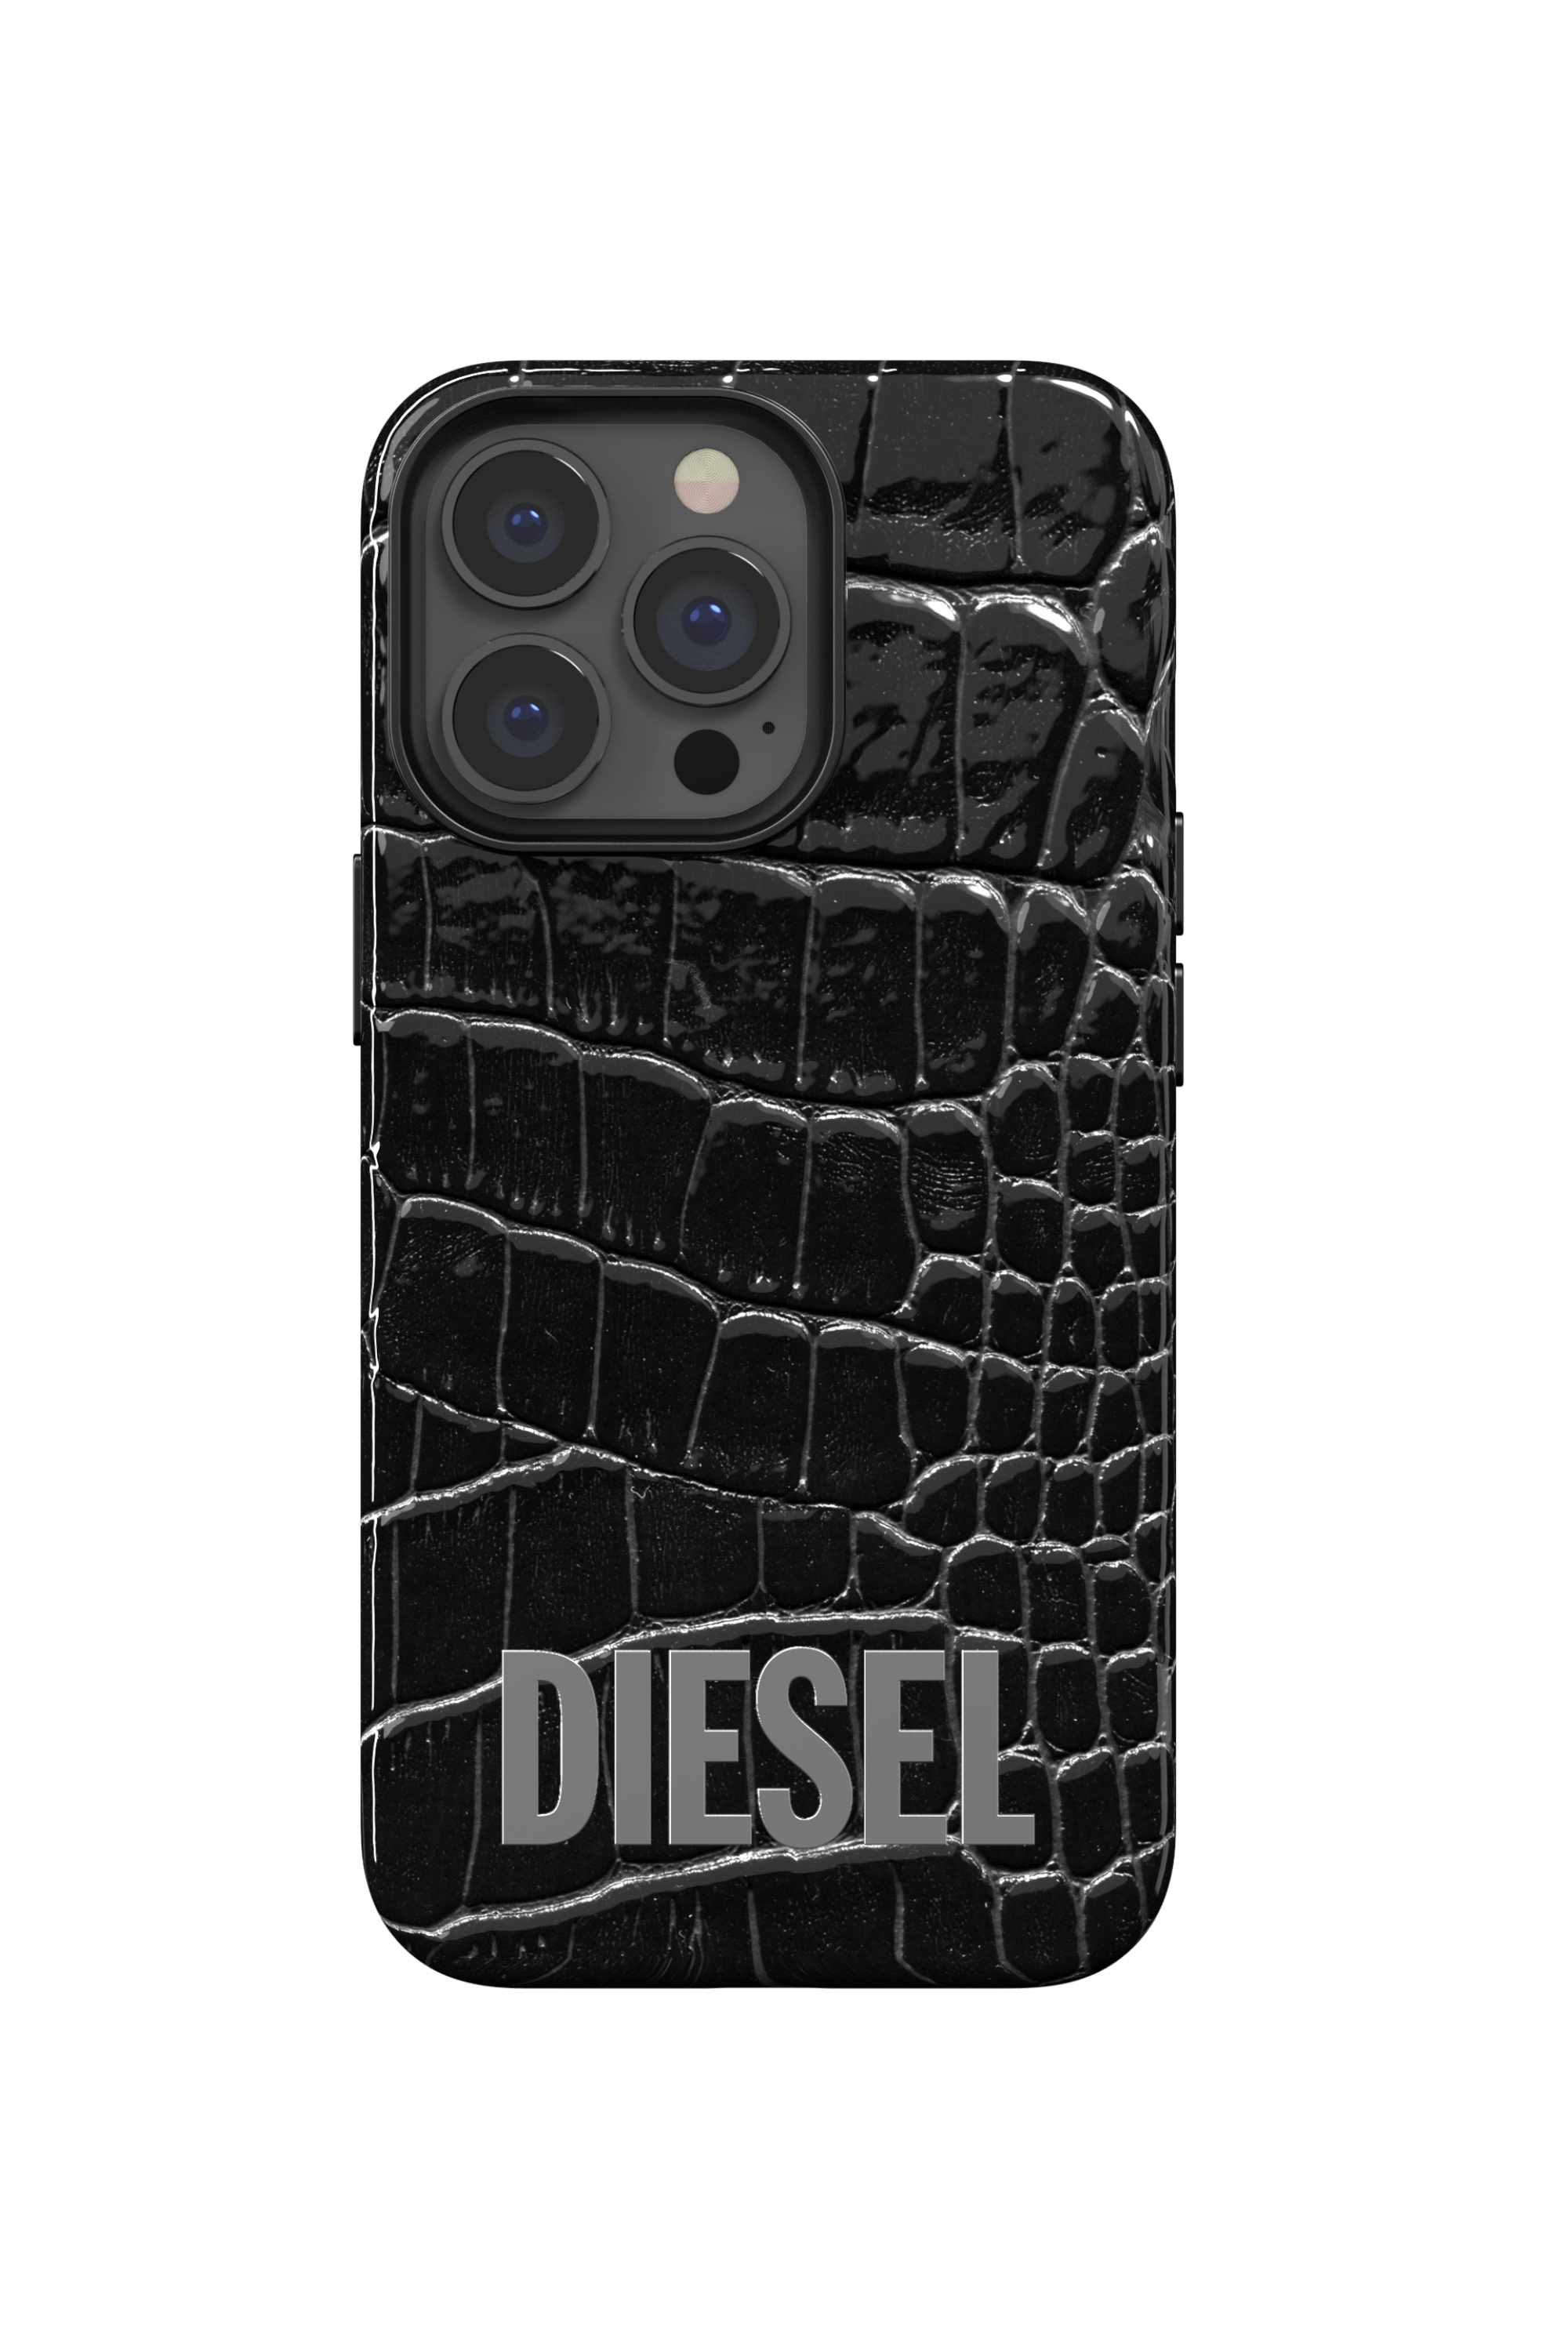 Diesel - 47174 STANDARD CASE, Black - Image 2